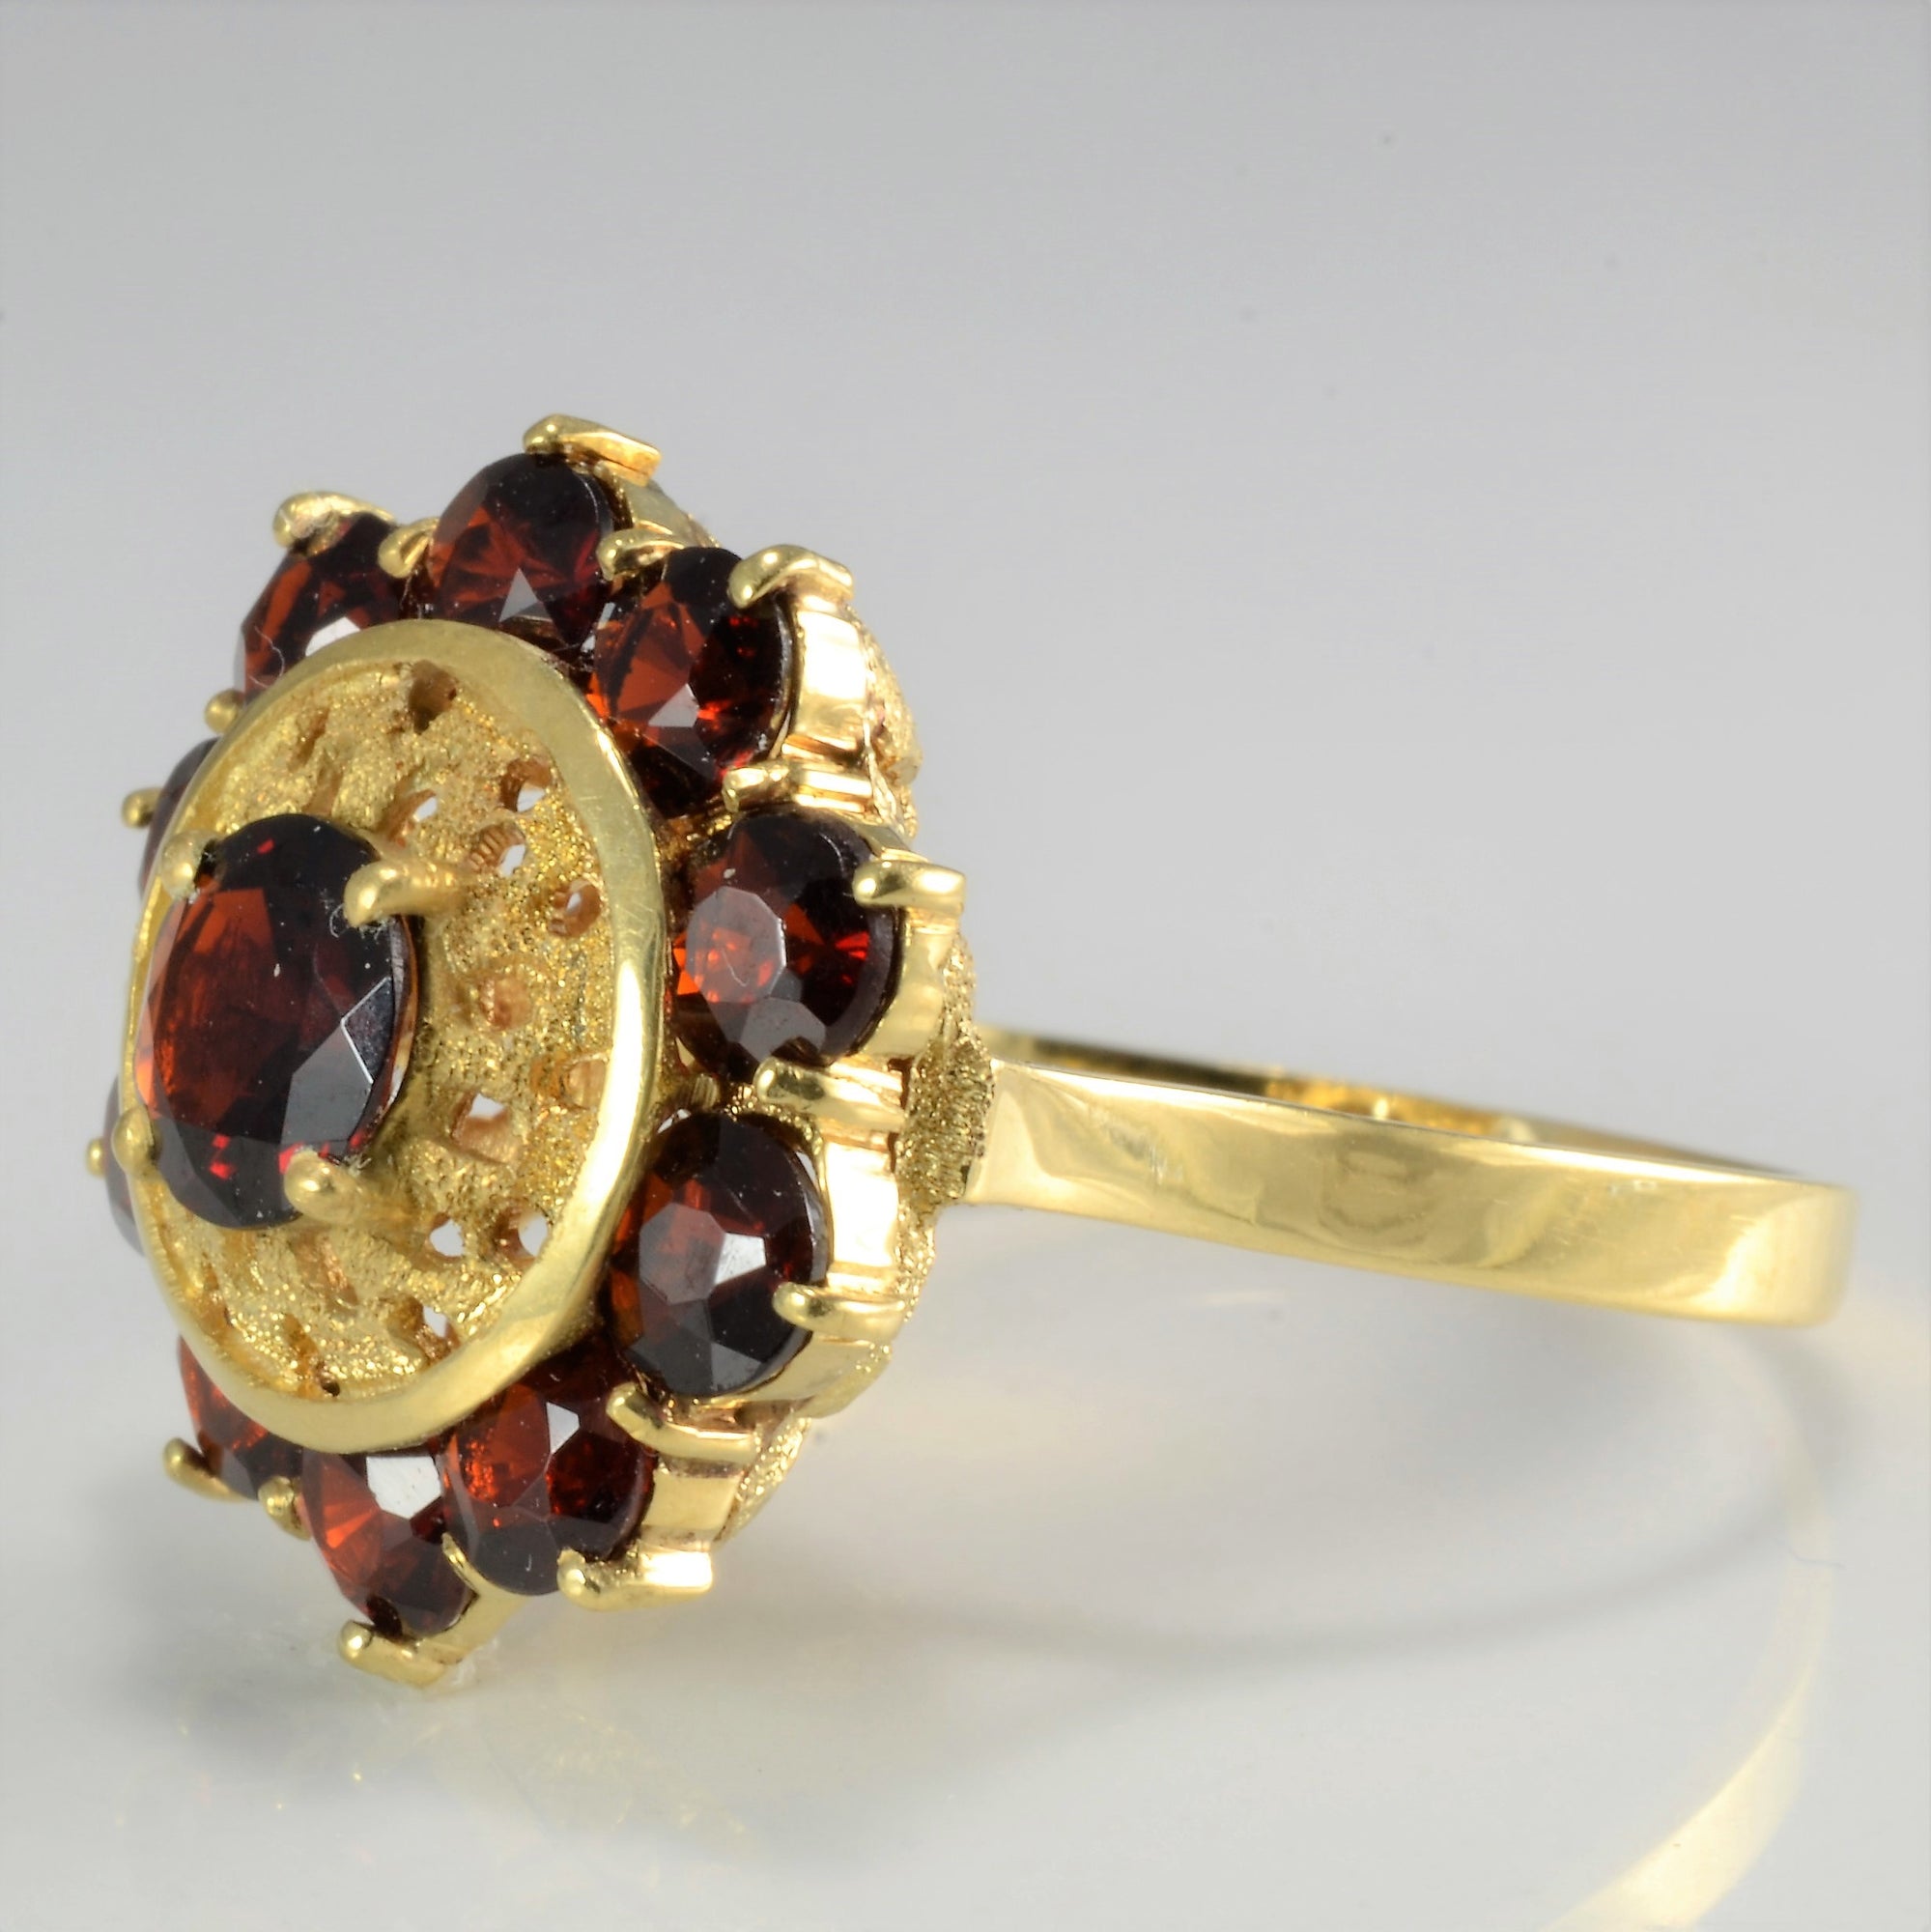 High Set Floral Design Garnet Vintage Ring | SZ 9.75 |